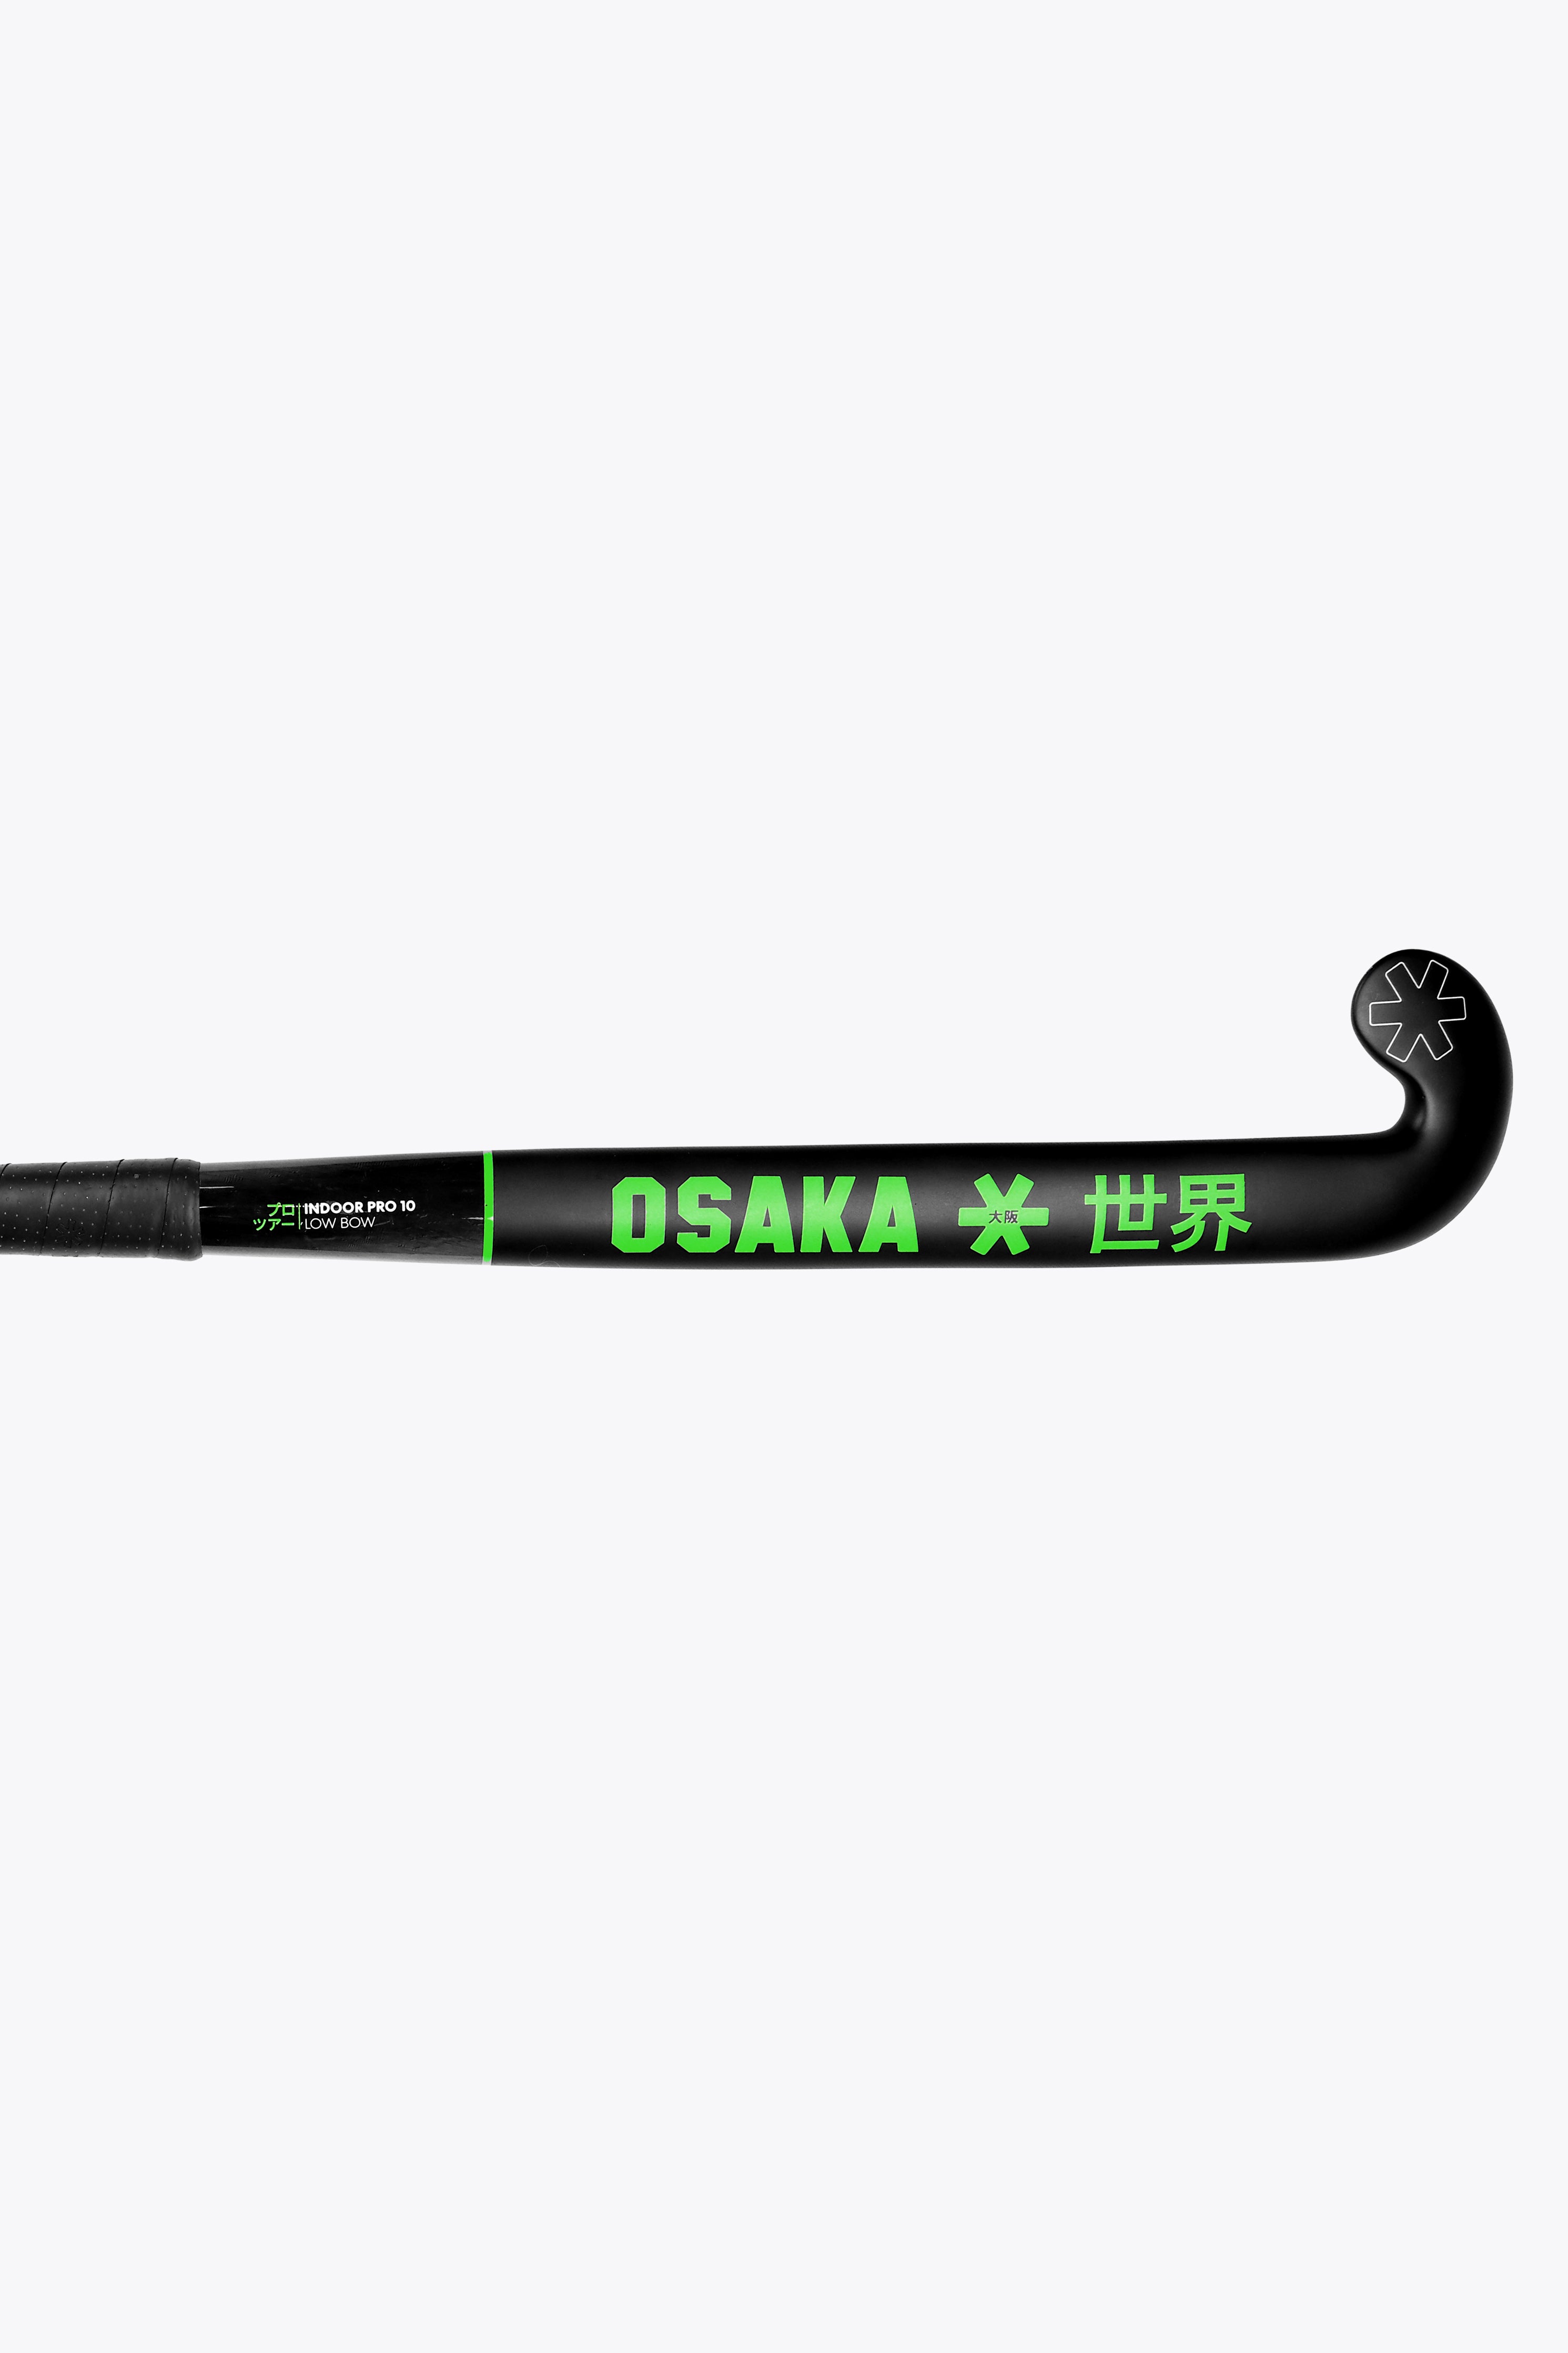 Osaka Pro Tour 10 Low Bow Indoor｜Osakaworld.com | Osaka World